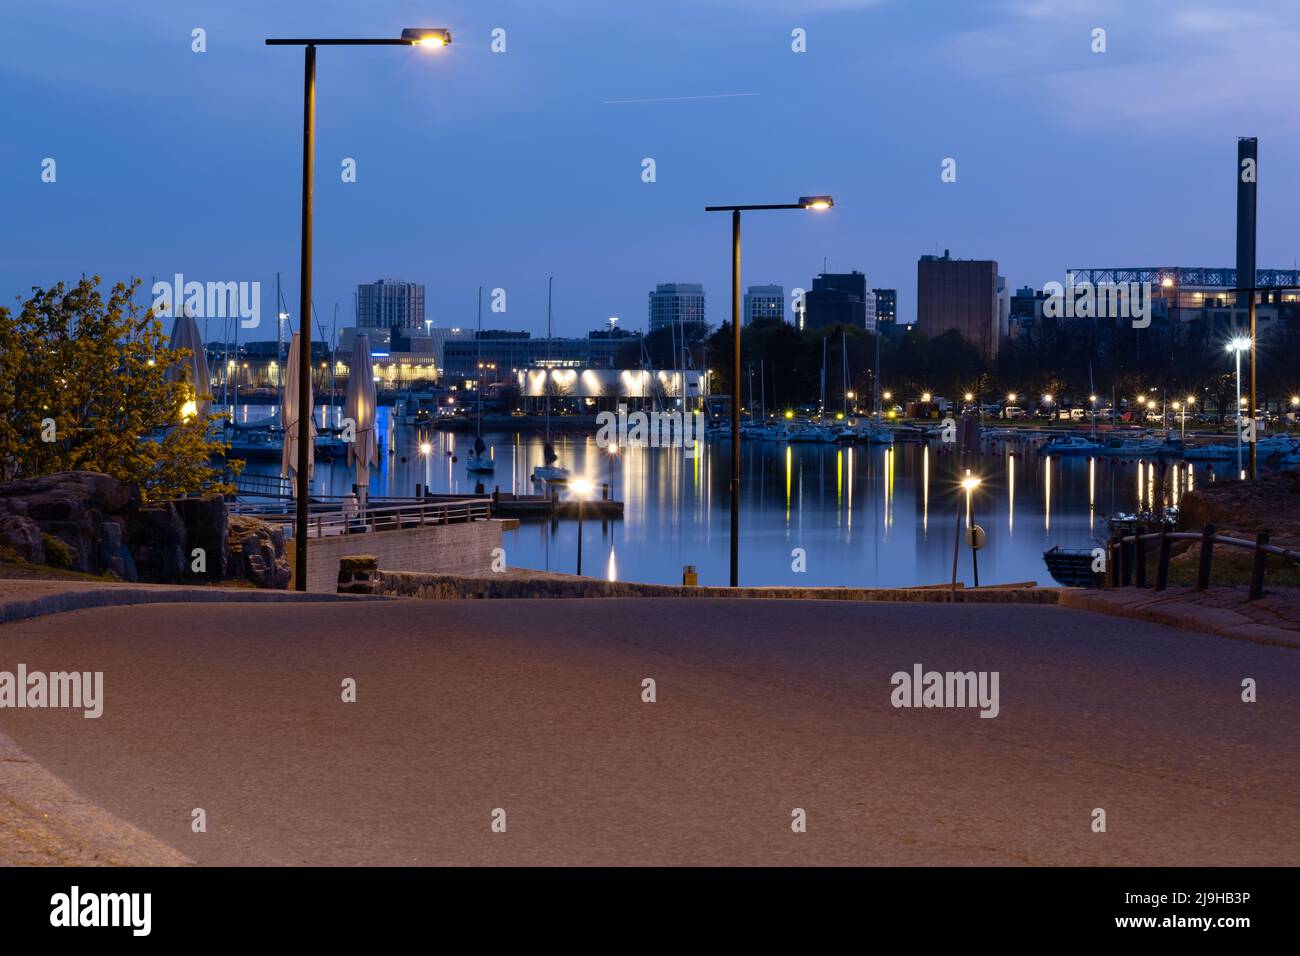 Helsinki / Finnland - 22. MAI 2022: Blick auf eine Uferpromenade mit einem ruhigen Meer und einer schlafenden Stadt im Hintergrund. Stockfoto